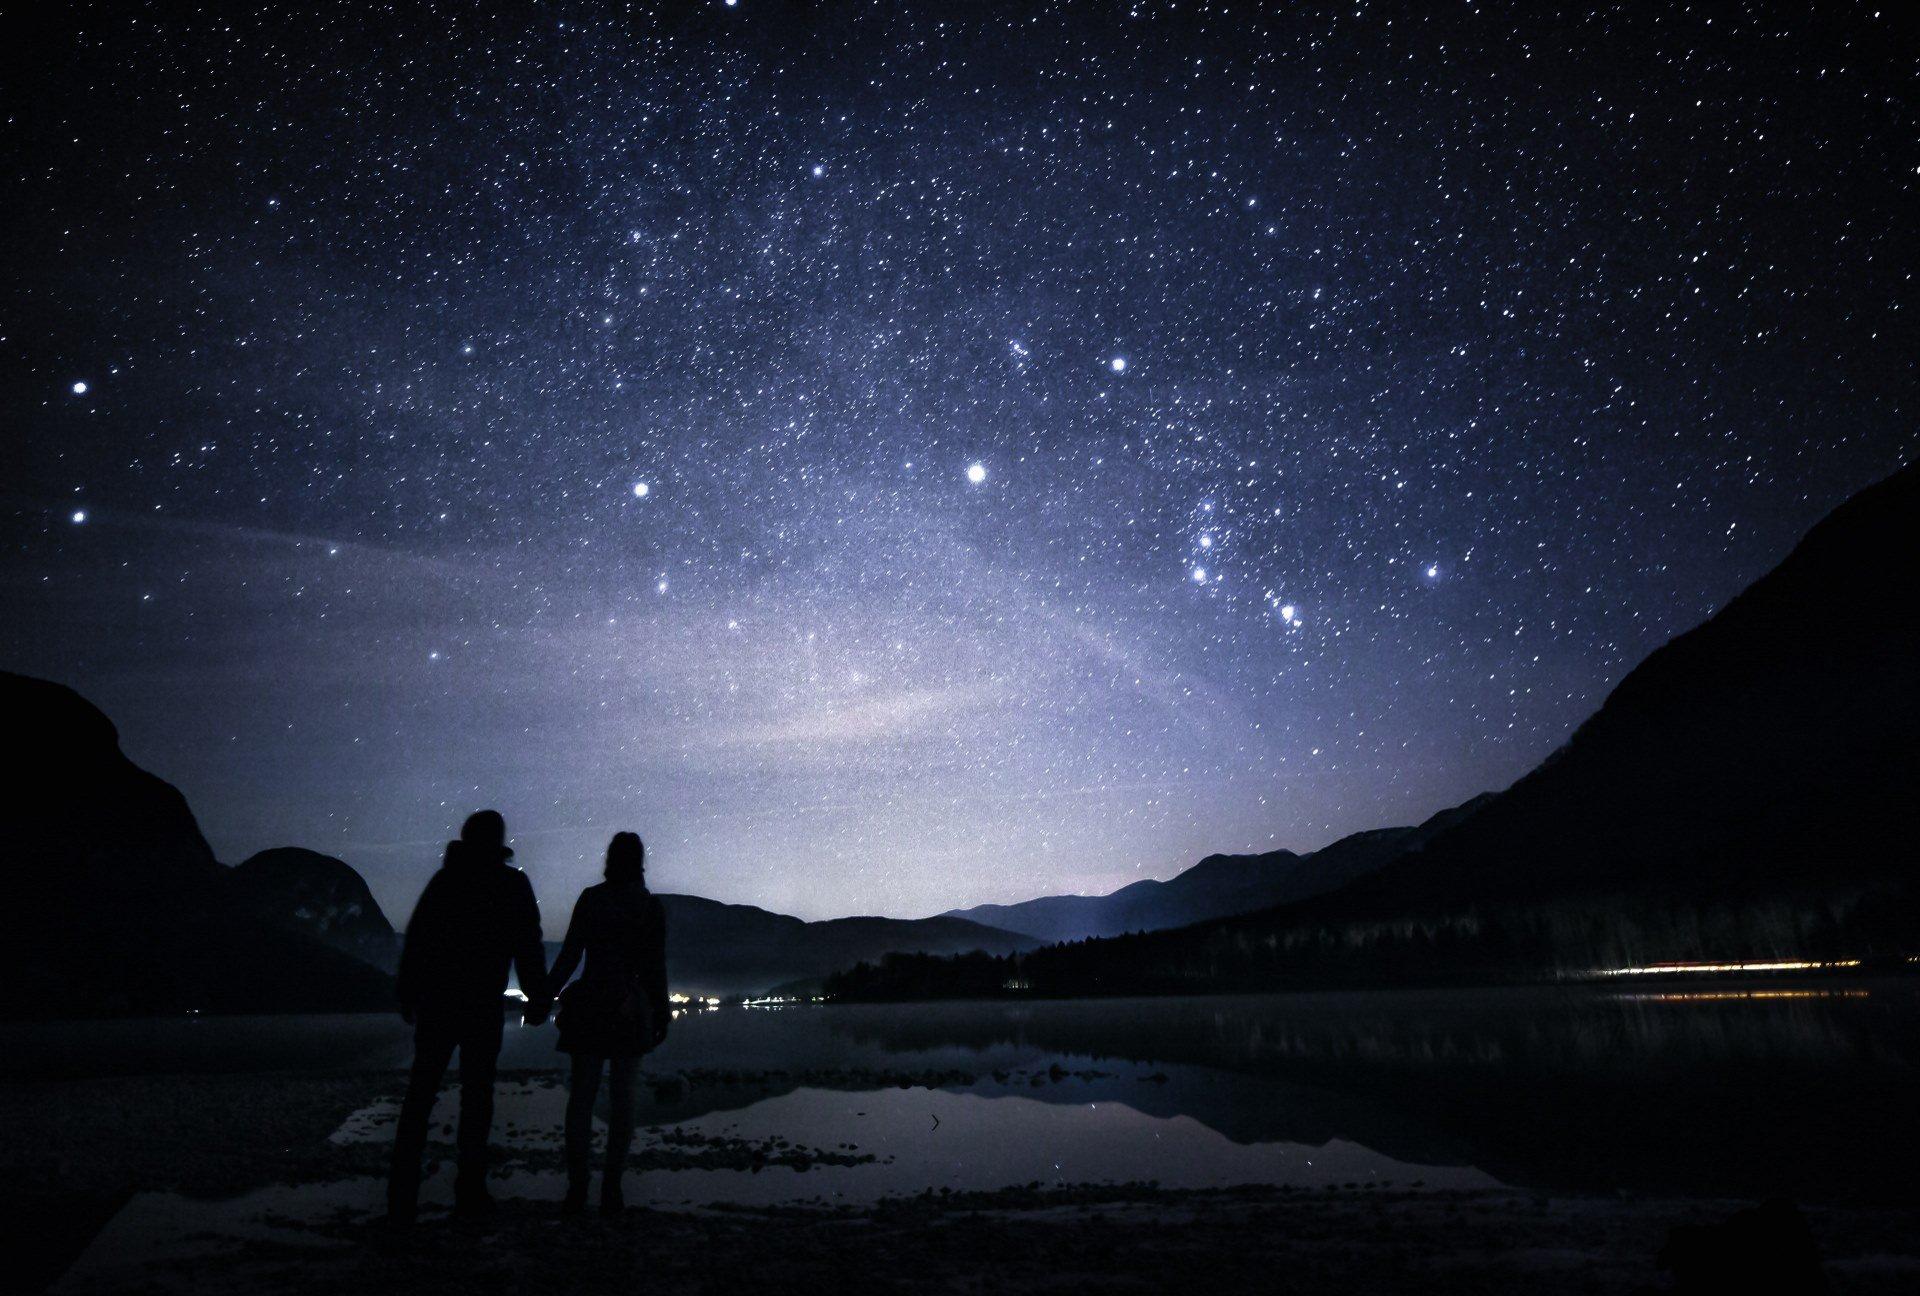 ночное небо над озером с огнями и звездами вокруг него, картина звездного  неба, звездное небо, ночное небо фон картинки и Фото для бесплатной загрузки